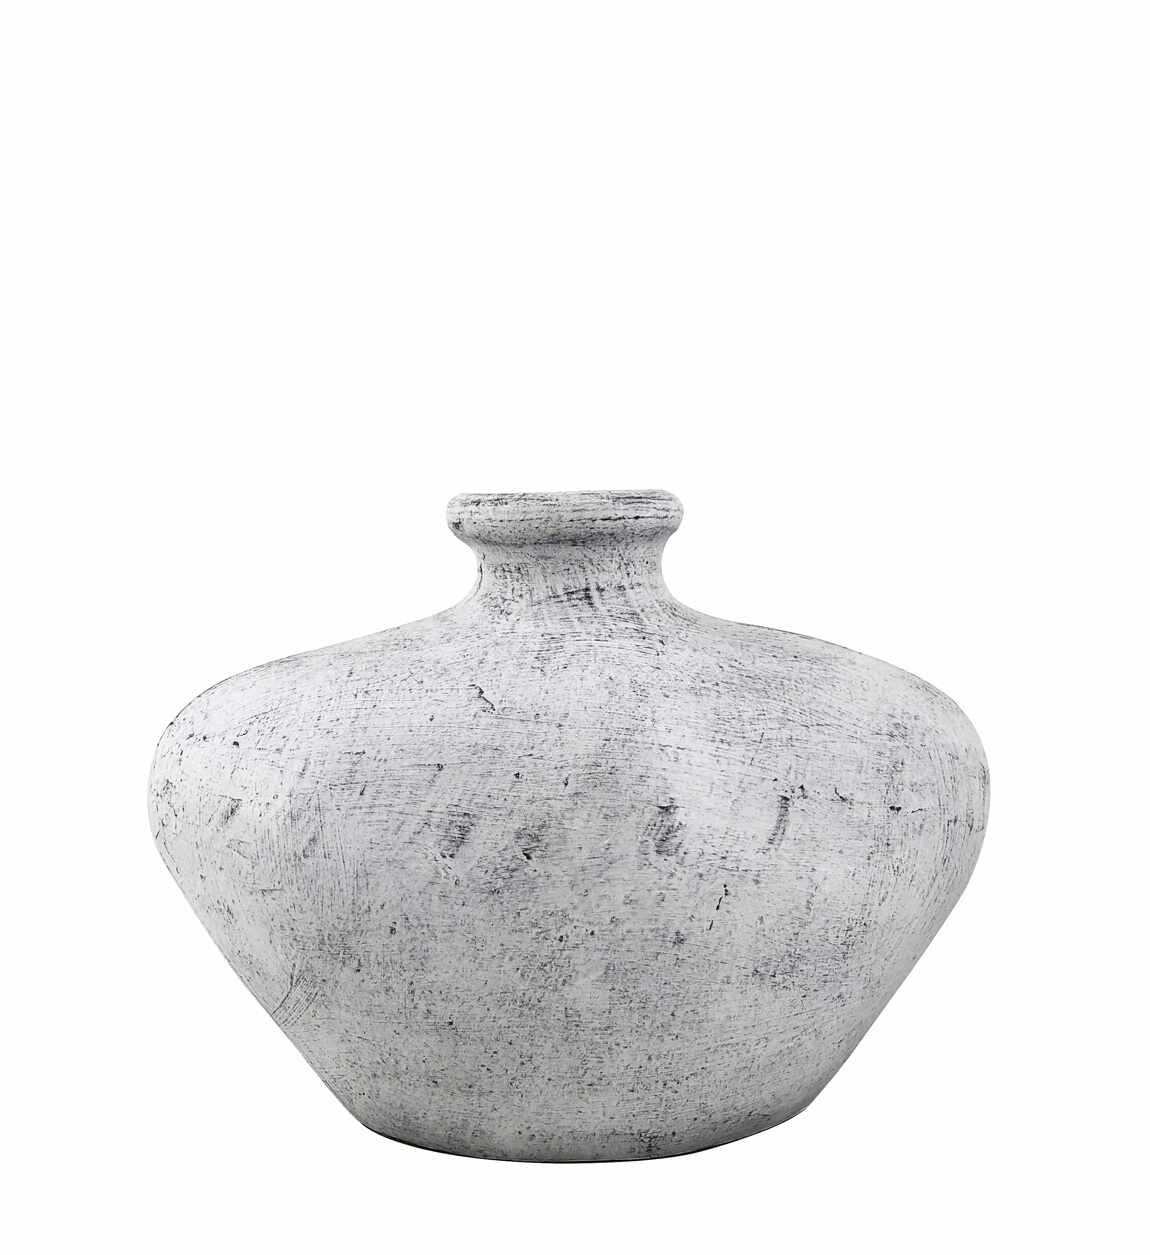 Vaza decorativa din ceramica, Bleached Pundak Gri, L50xl20xH38 cm